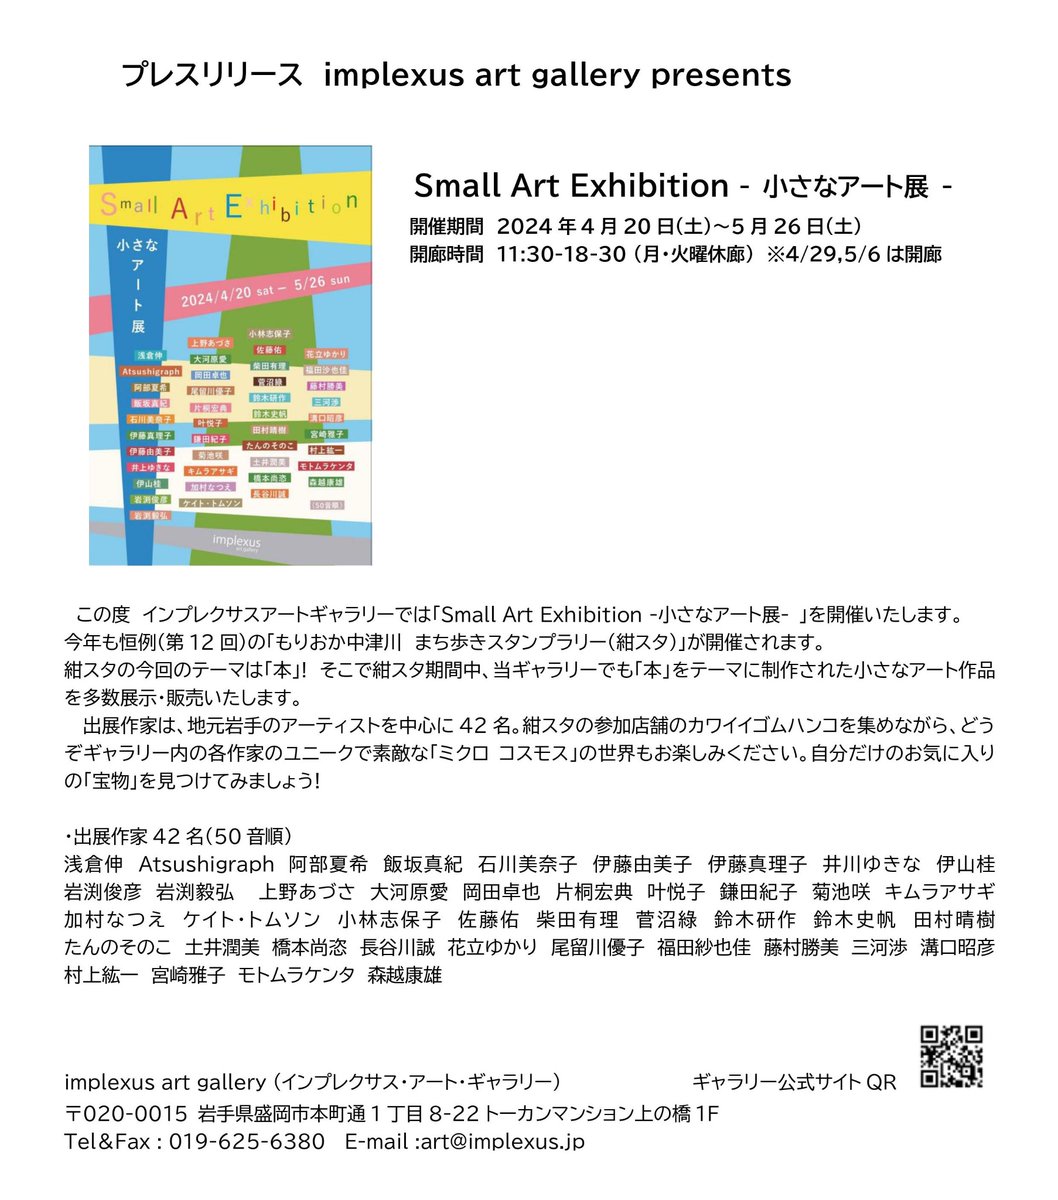 Small Art Exhibition-小さなアート展-開催のお知らせ 開催期間　4月20日(土)〜5月26日(土) 開廊時間　11:30-18:30 月、火曜休廊、4/29、5/6の月曜は開廊します。 岩手在住のアーティストを中心に42名の作家の小さな作品を展示・販売します。テーマは「本」。自分のお気に入りの作品を見つけよう！